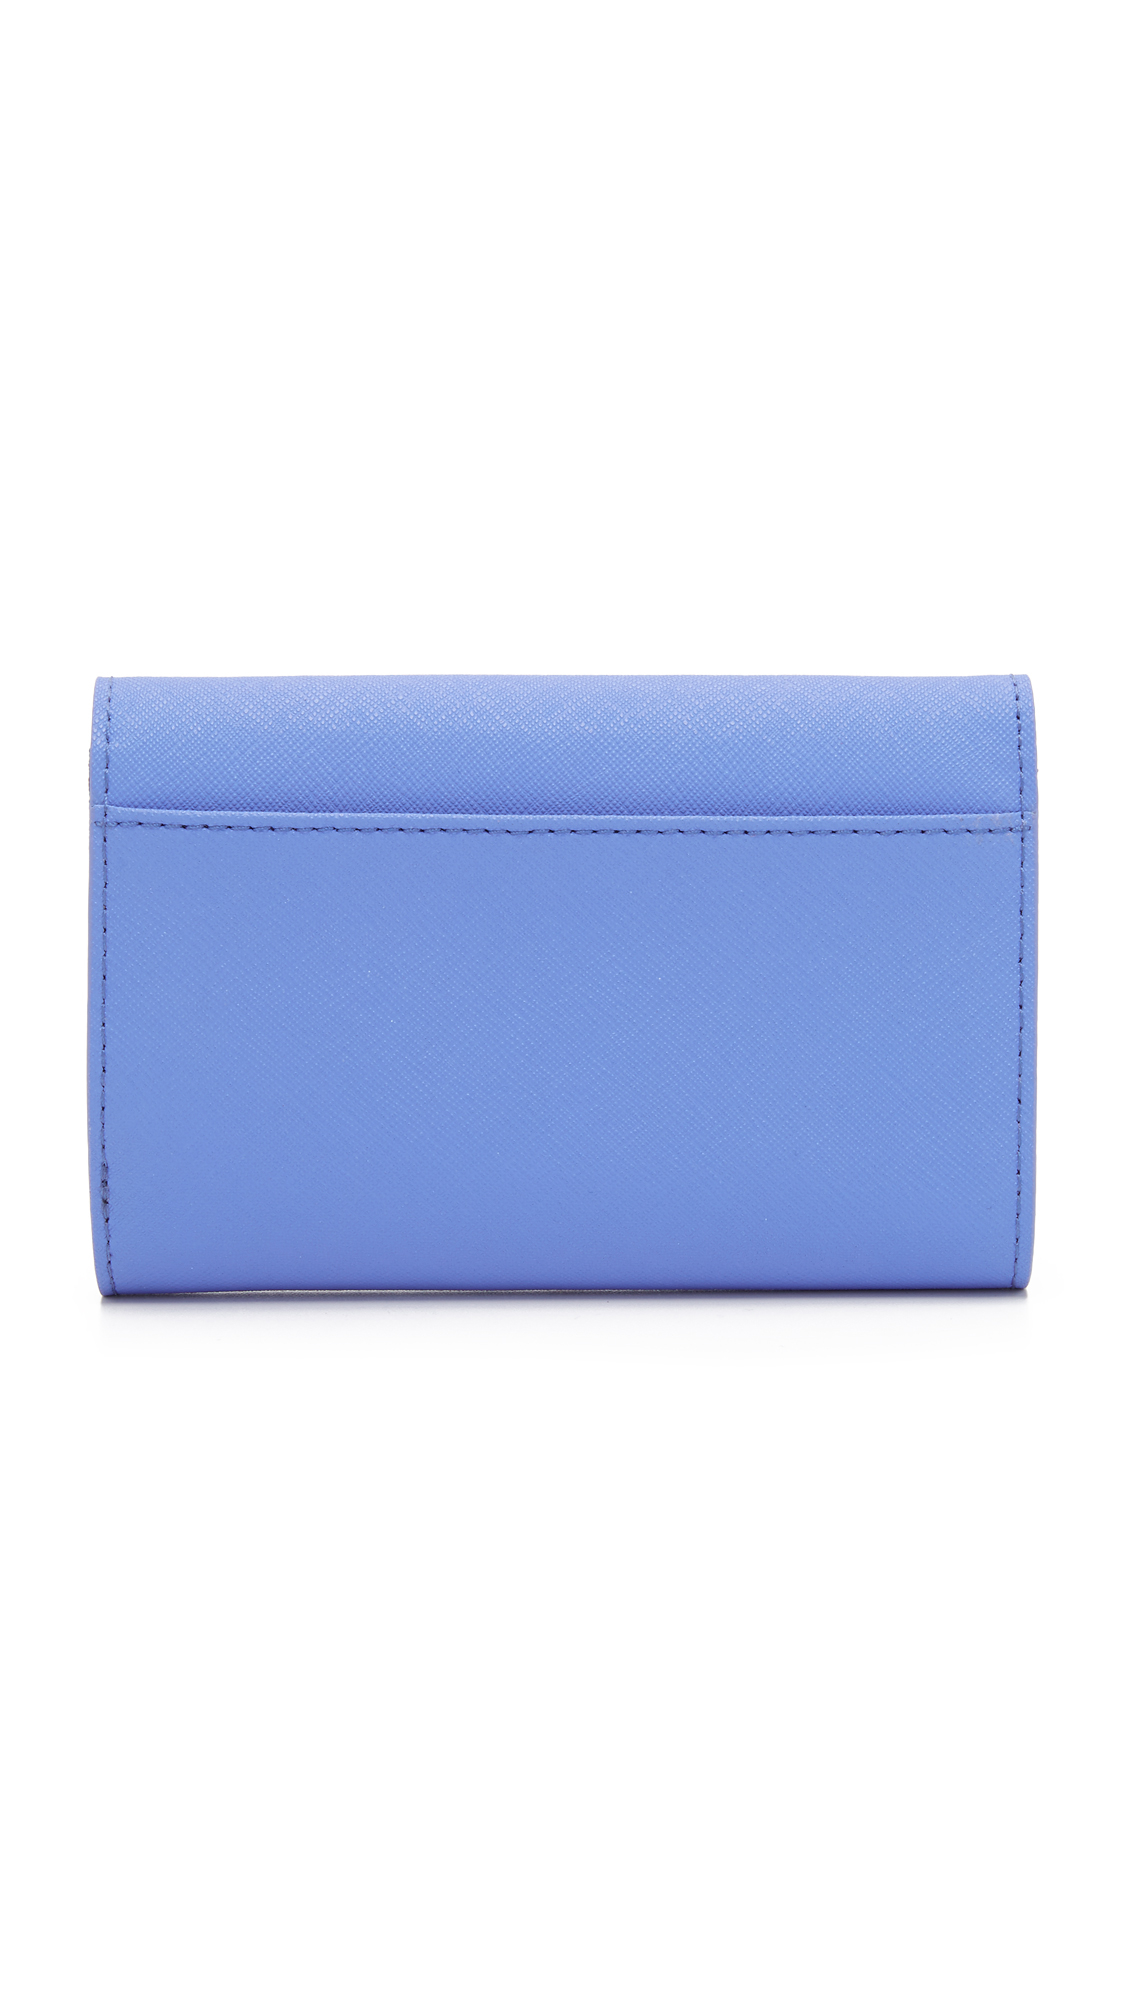 Kate Spade Kieran Wallet in Blue | Lyst